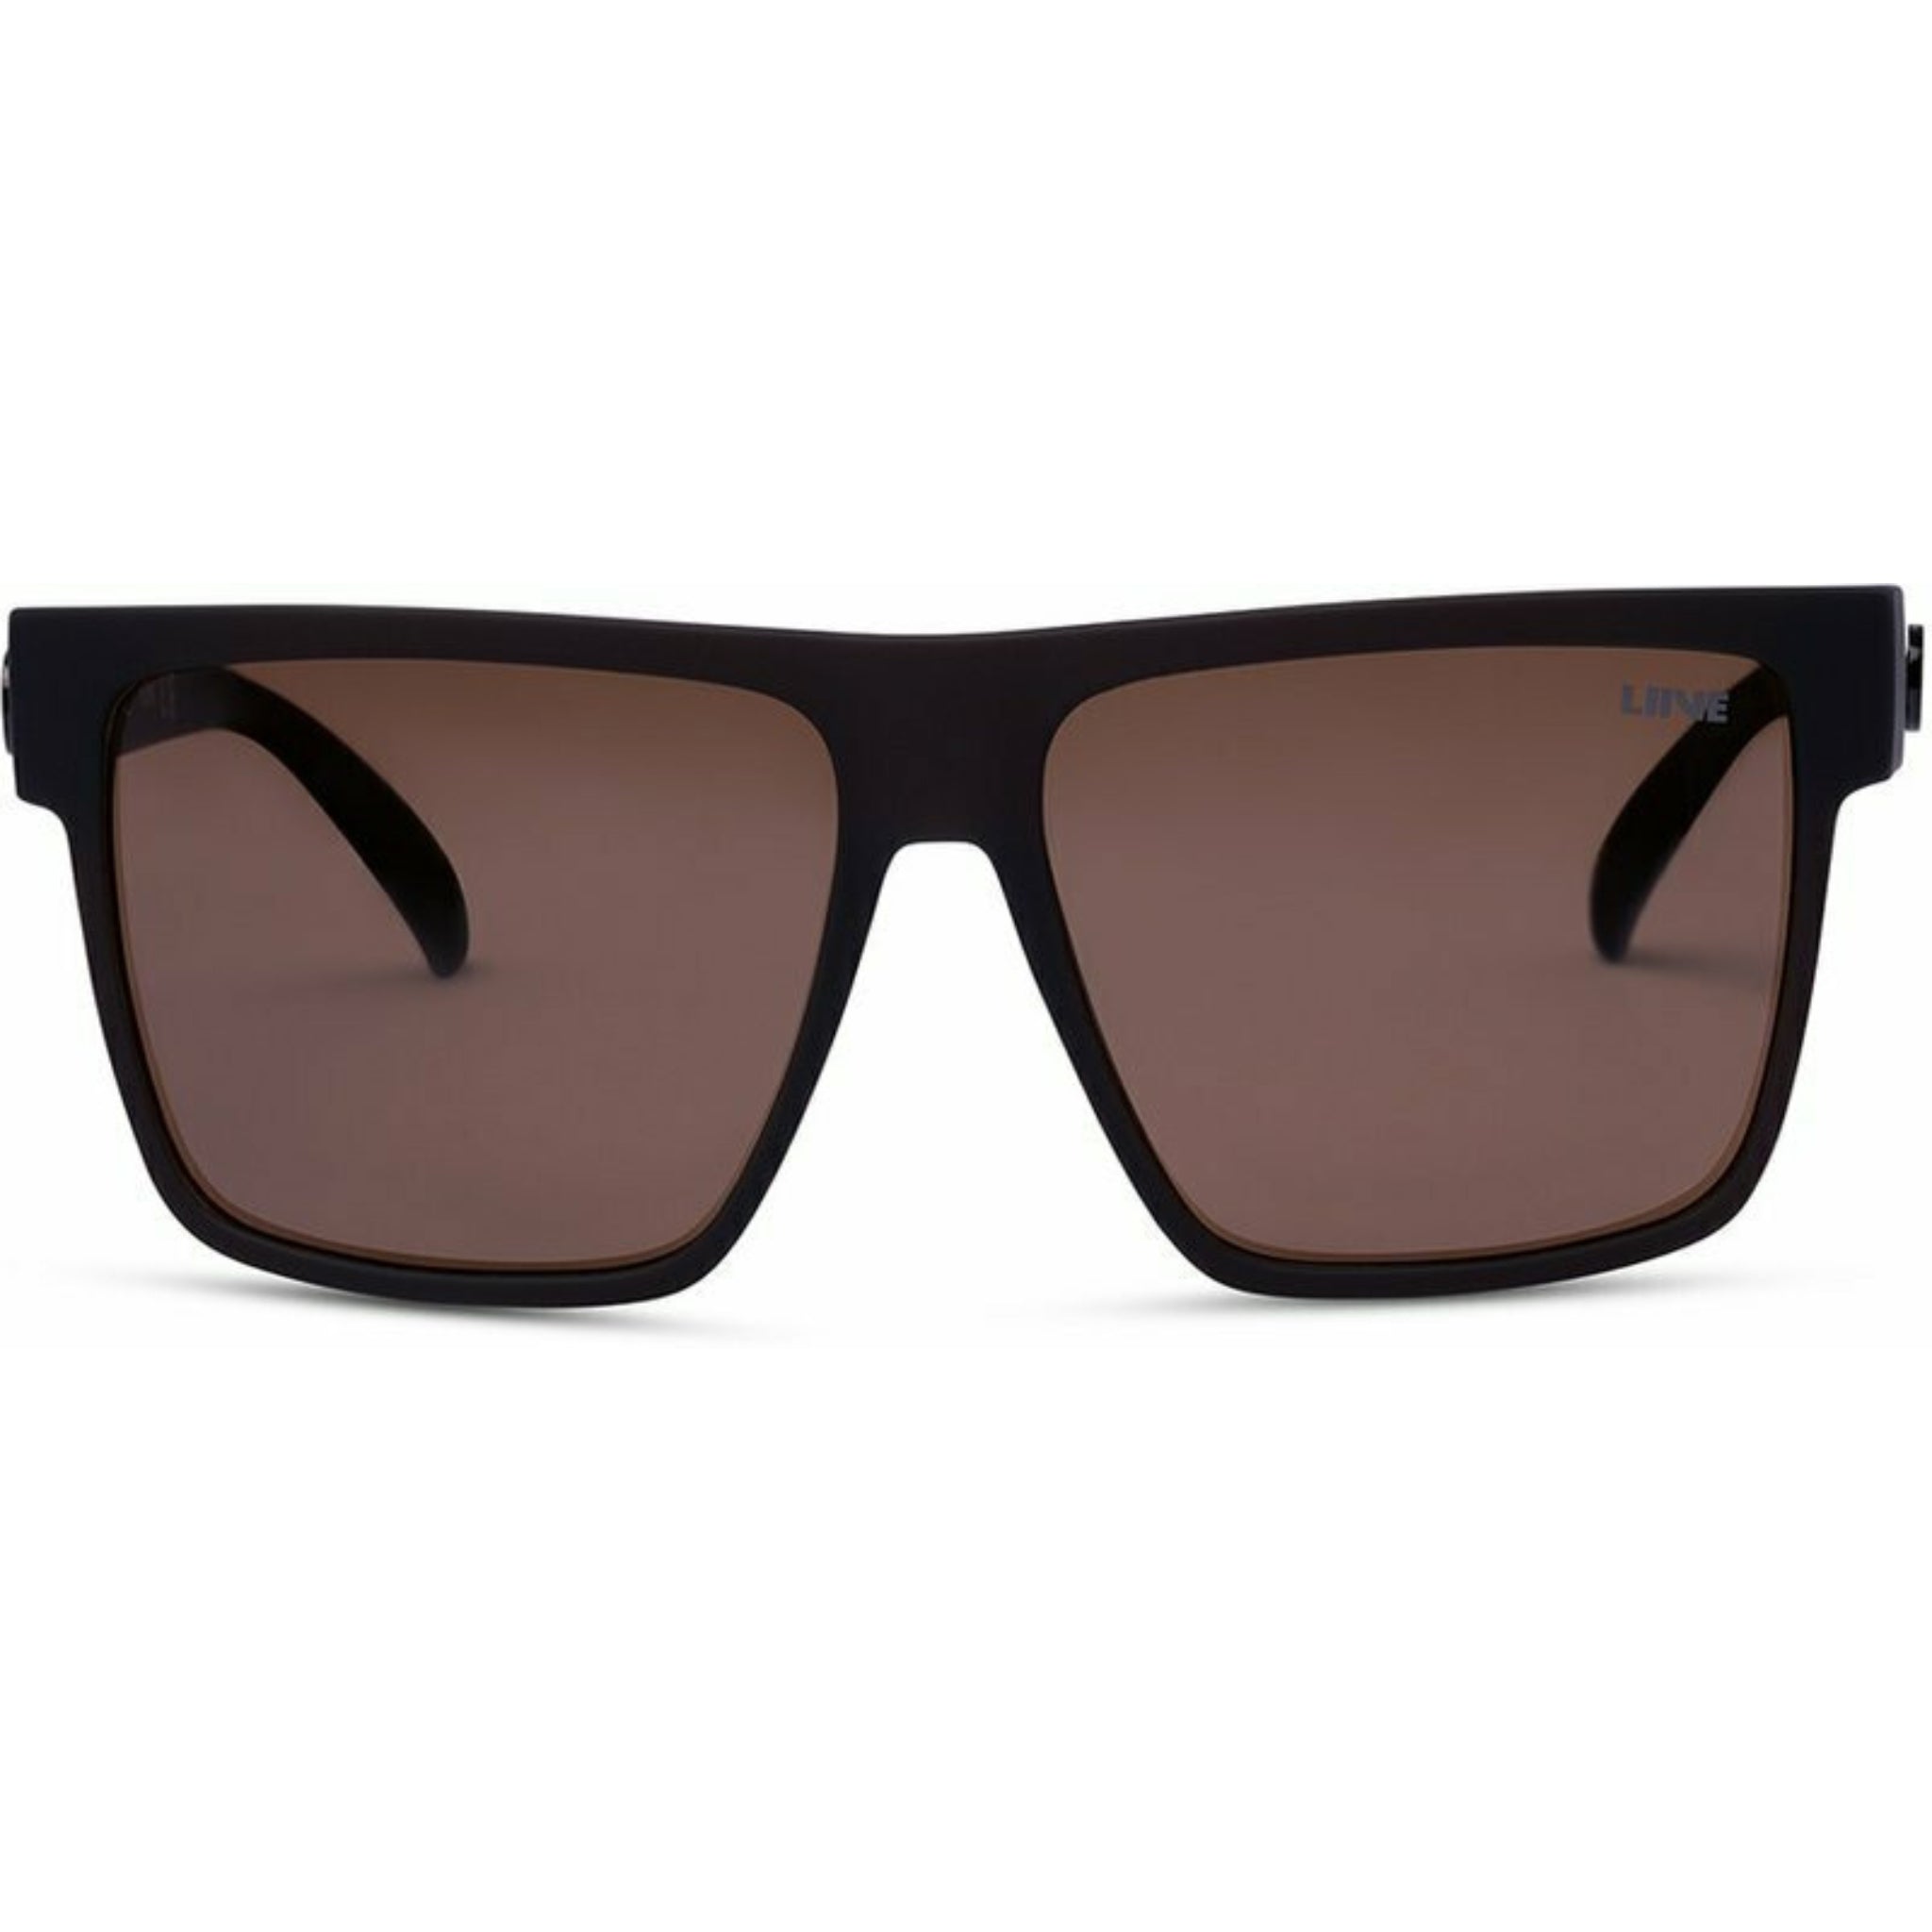 Liive Offshore Mirror Polarised Sunglasses - Matte Black